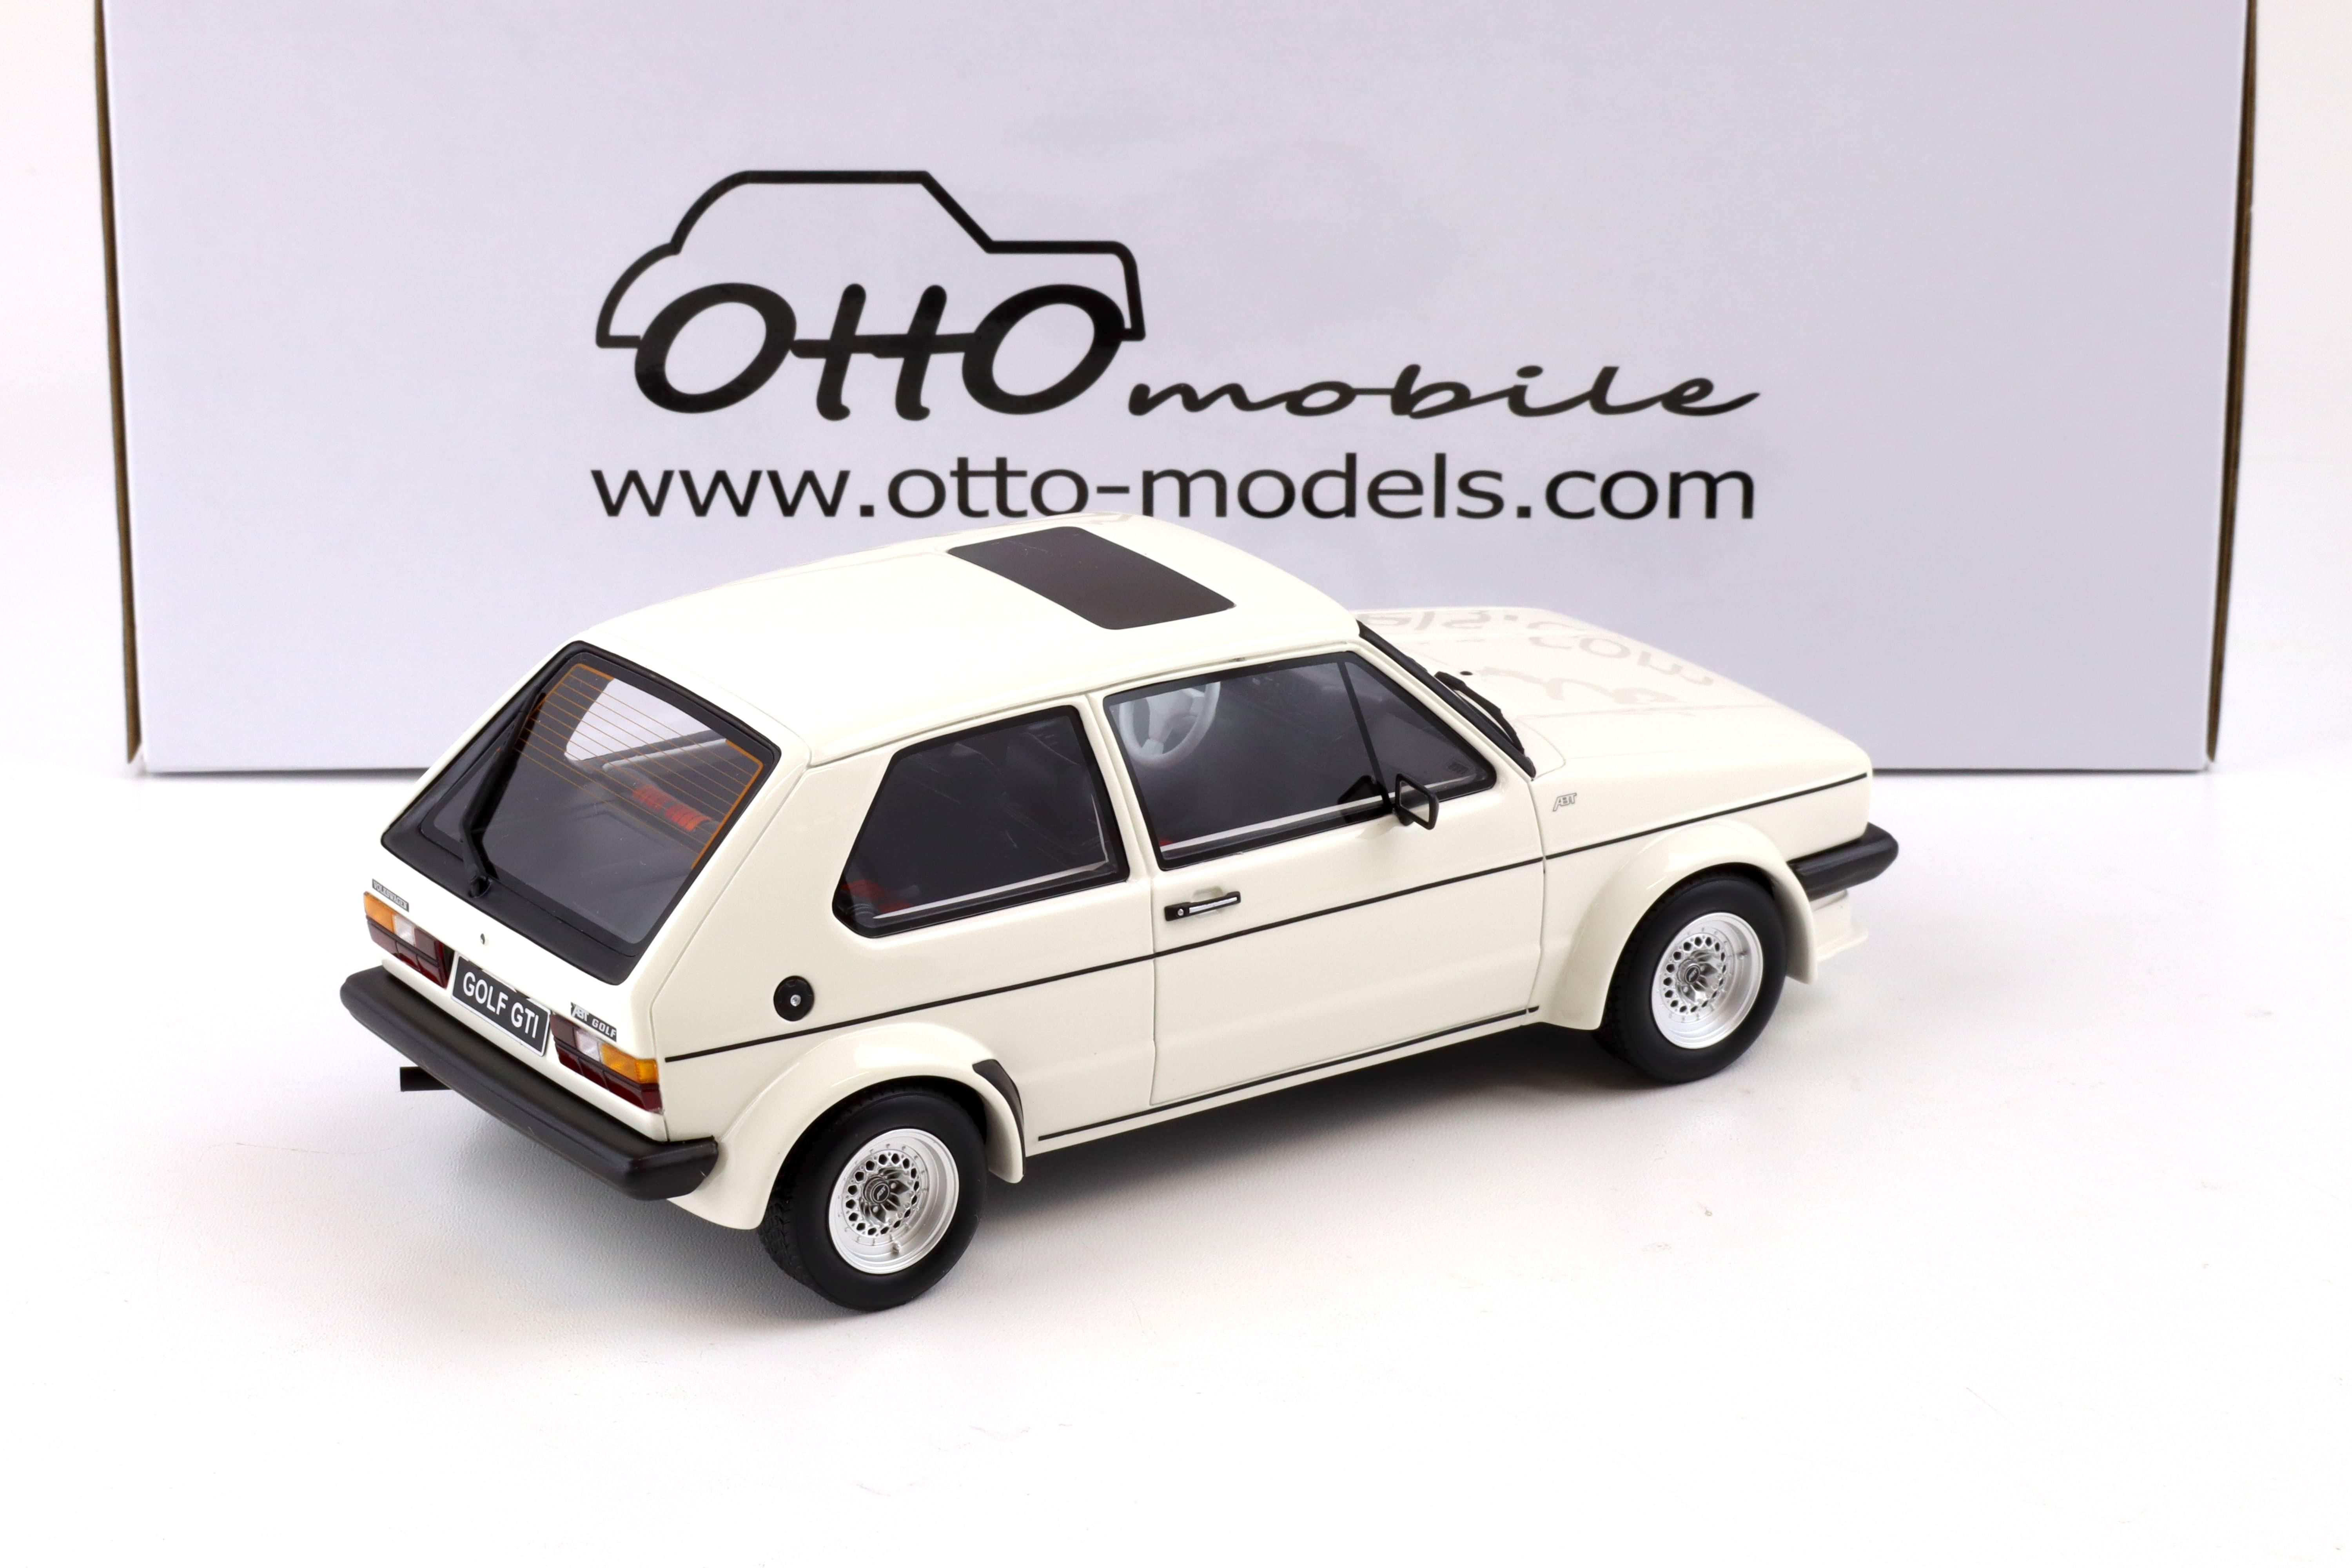 1:18 OTTO mobile OT1014 VW Golf GTI MK1 ABT white 1982